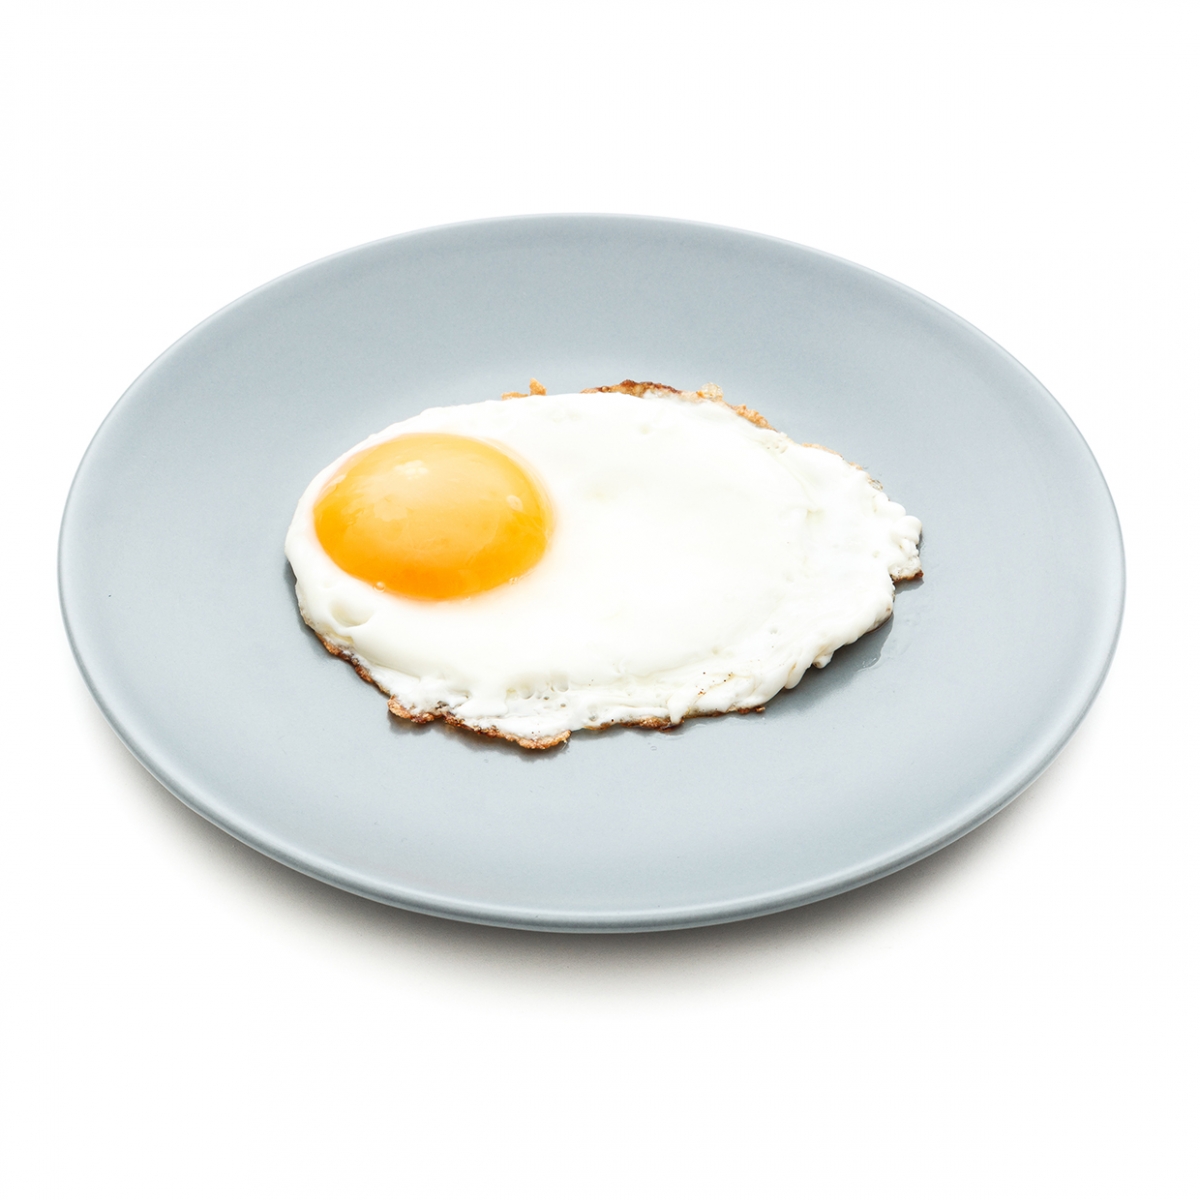 Imagen en la que se ve un plato con un huevo frito cocinado sobre él